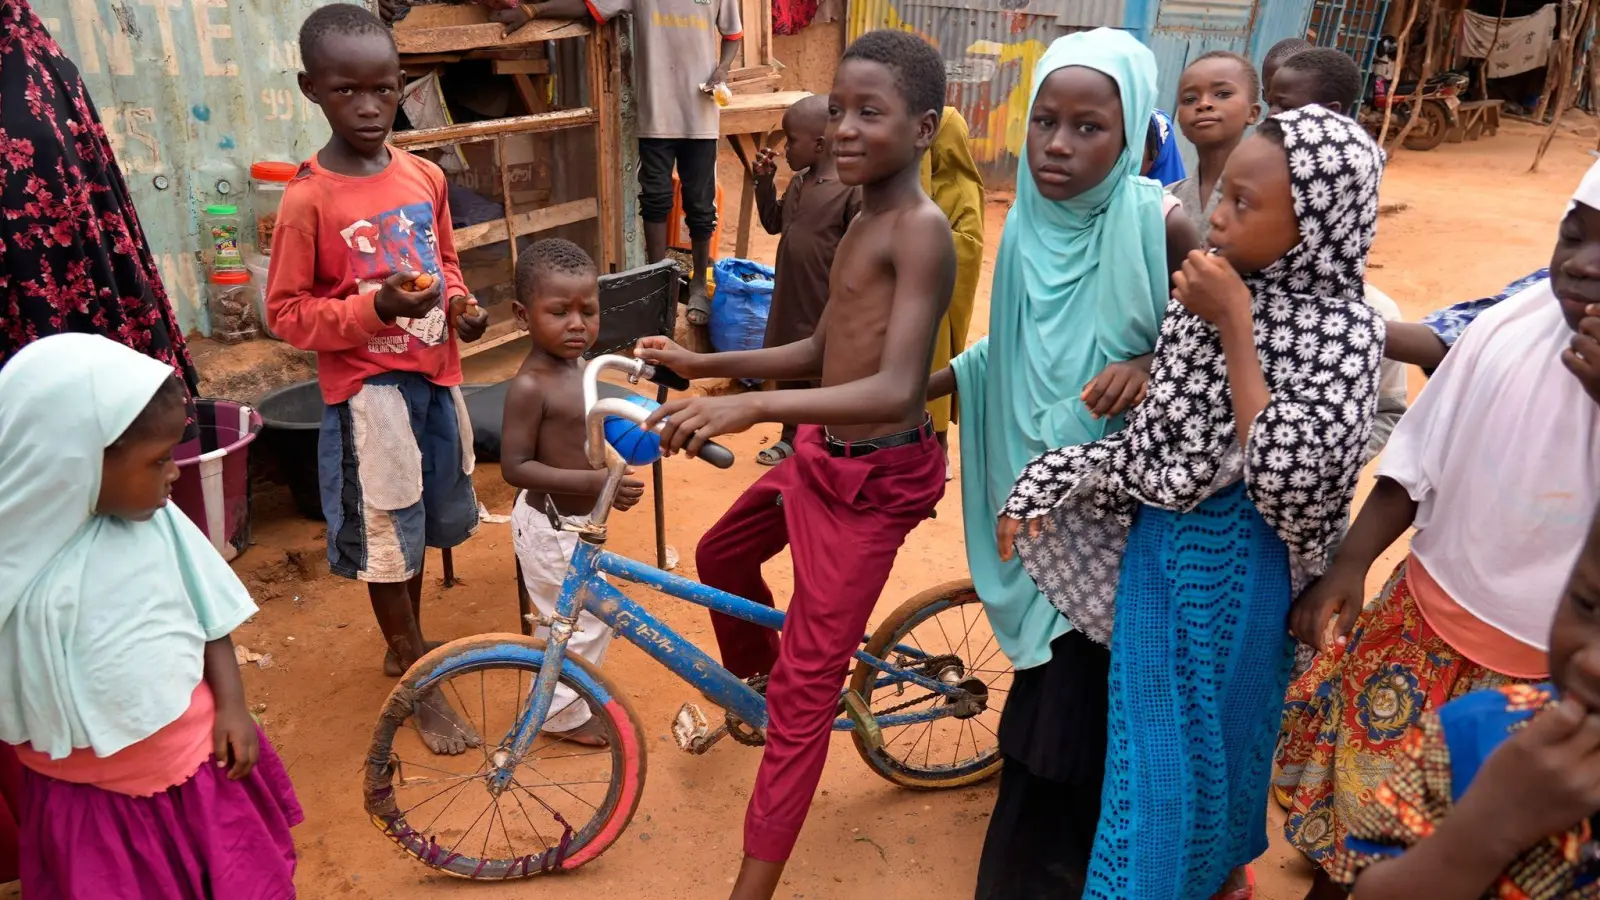 Kinder spielen auf der Straße. Nach dem Putsch im Niger befürchten Experten eine anstehende Lebensmittelkrise. (Foto: Sam Mednick/AP/dpa)